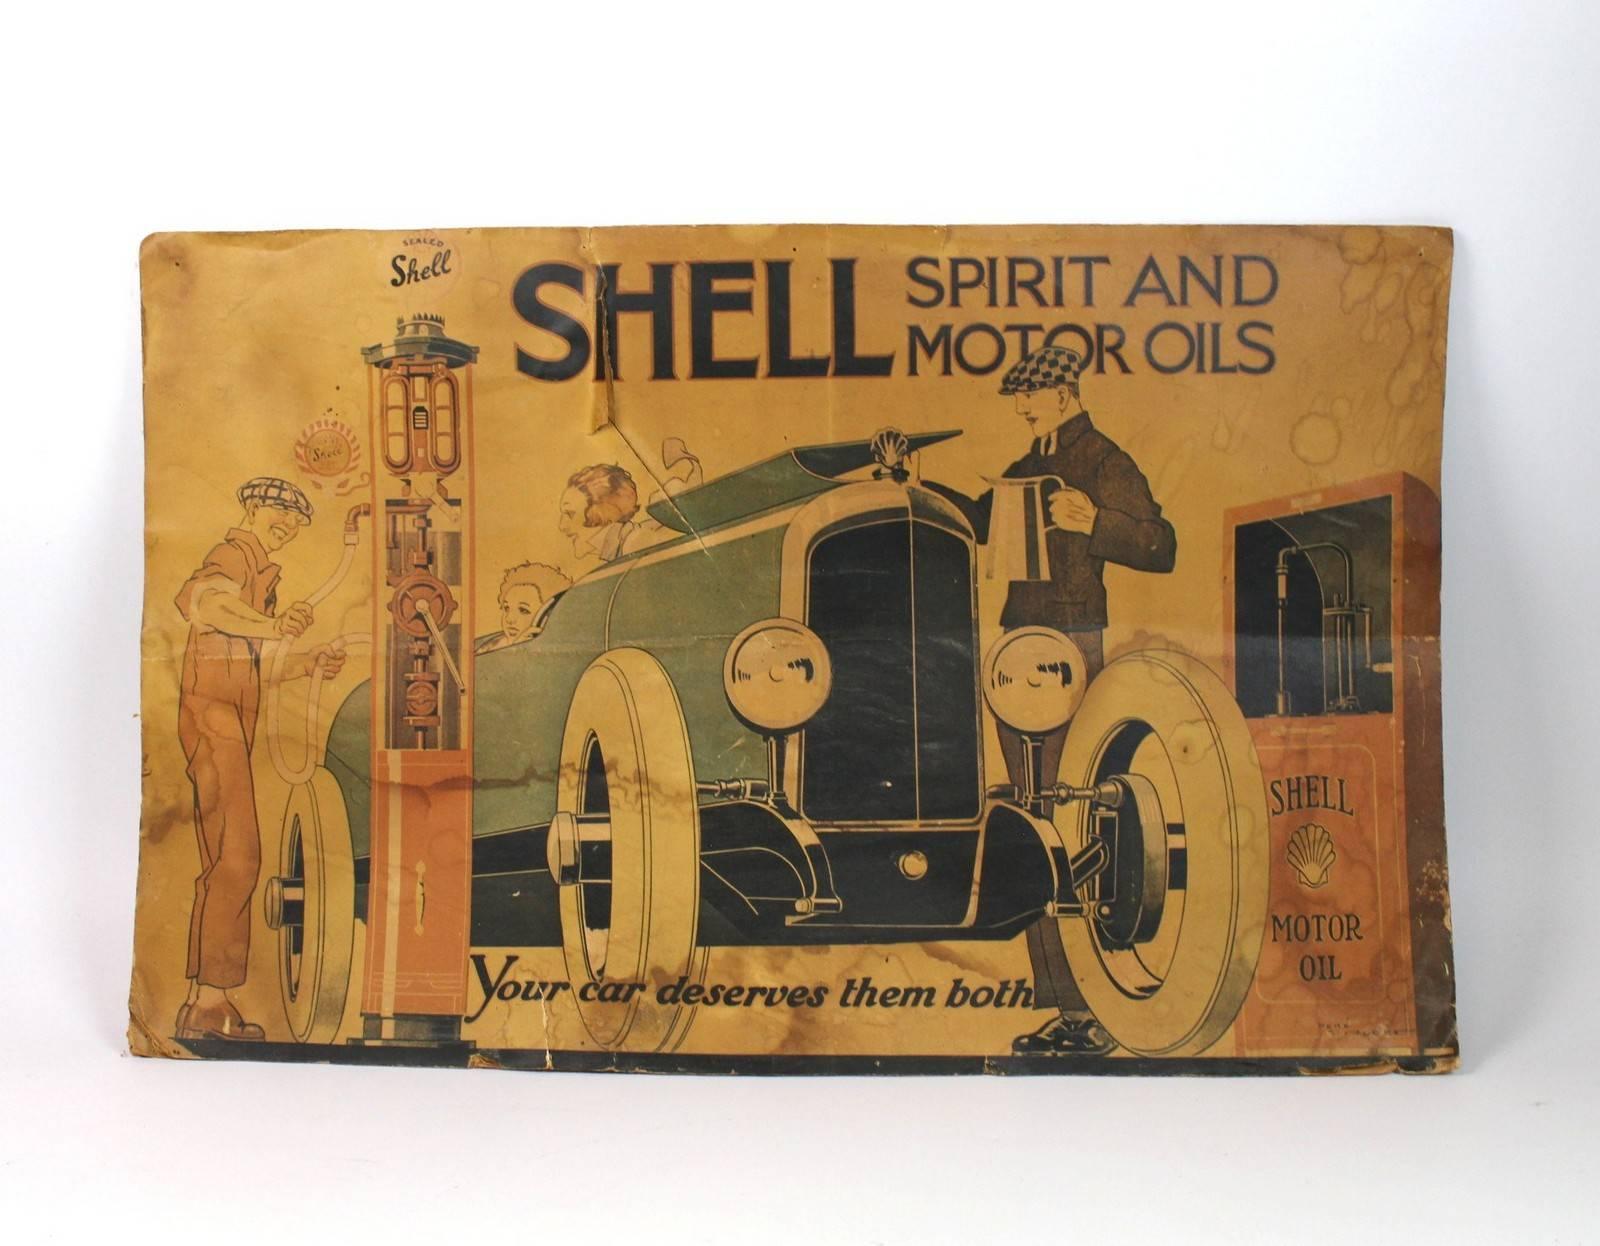 Vintage Poster Shell Motor Oil Gasoline von Rene Vincent aus dem Jahr 1926.
Ungefähre Maße: 46 x 73 cm.
Altersbedingter Zustand mit verstärkten Gebrauchsspuren, Knicken und Rissen.